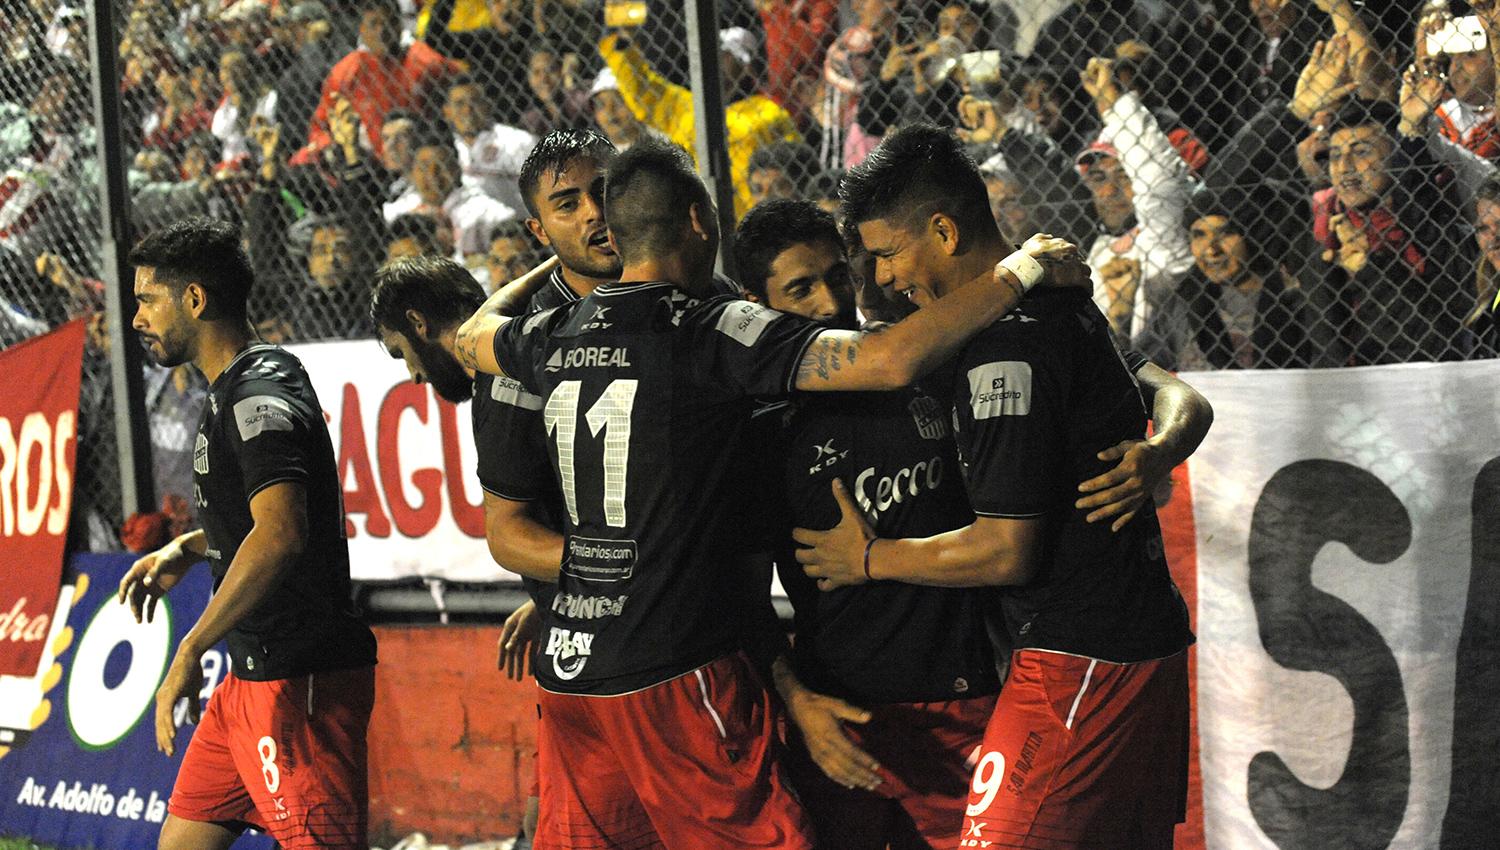 Con tres goles de Lentini, San Martín goleó en La Ciudadela - La Gaceta Tucumán